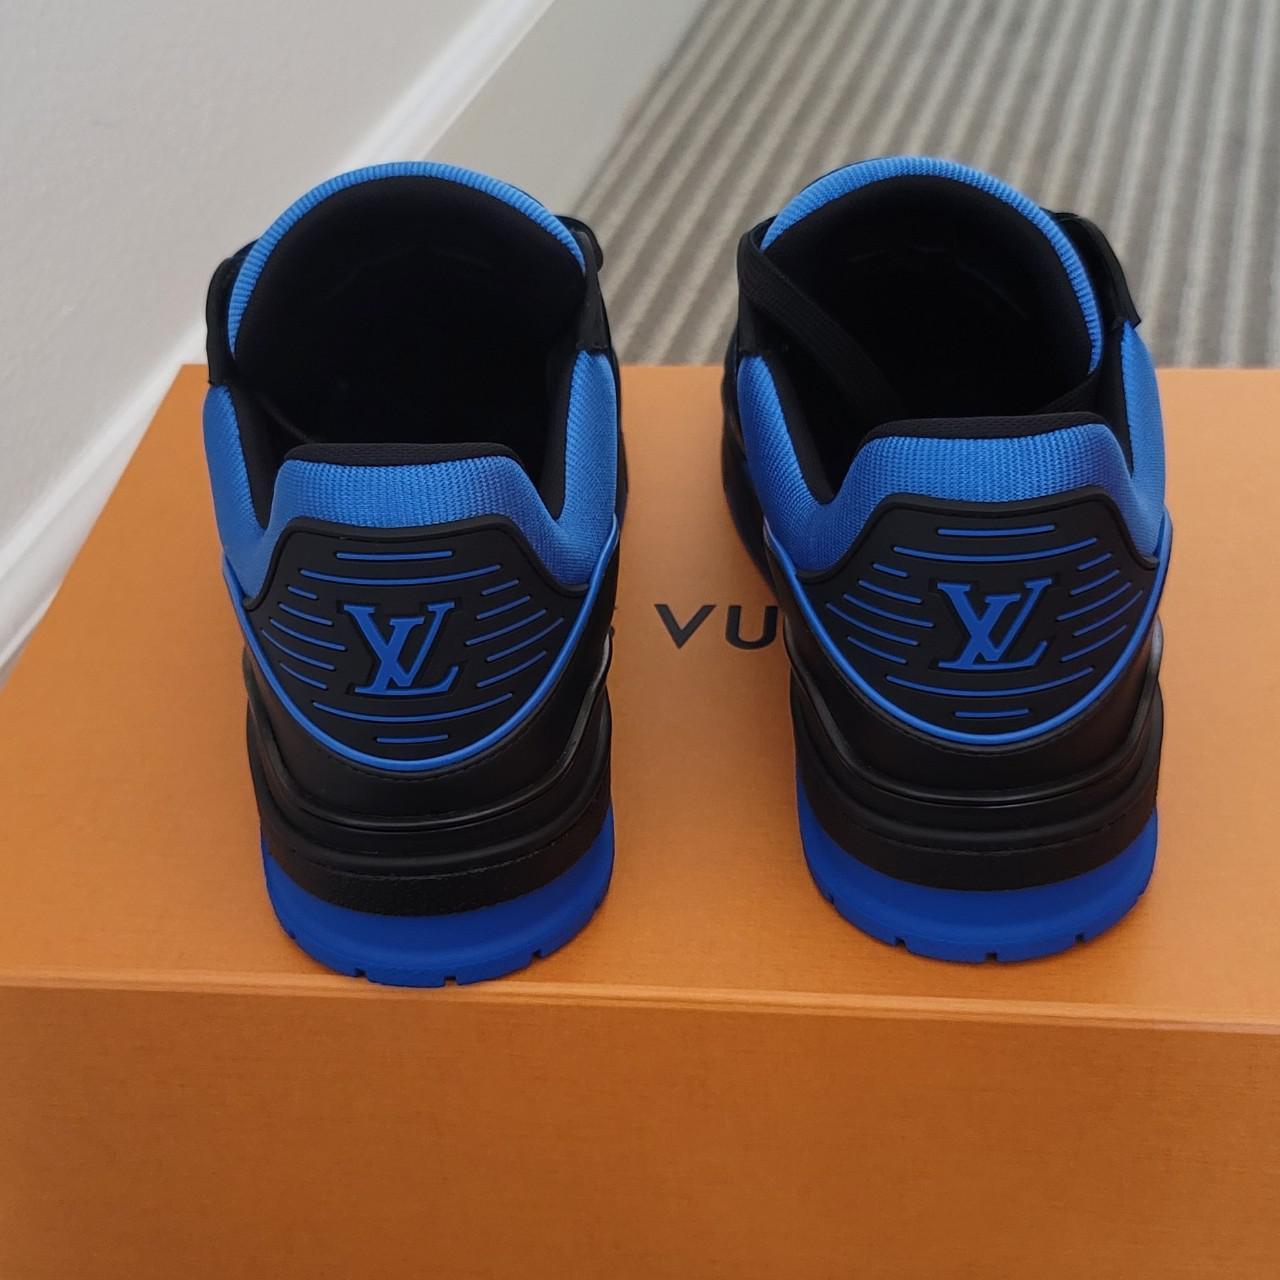 Louis Vuitton trainer Color: dark blue/black Size: - Depop